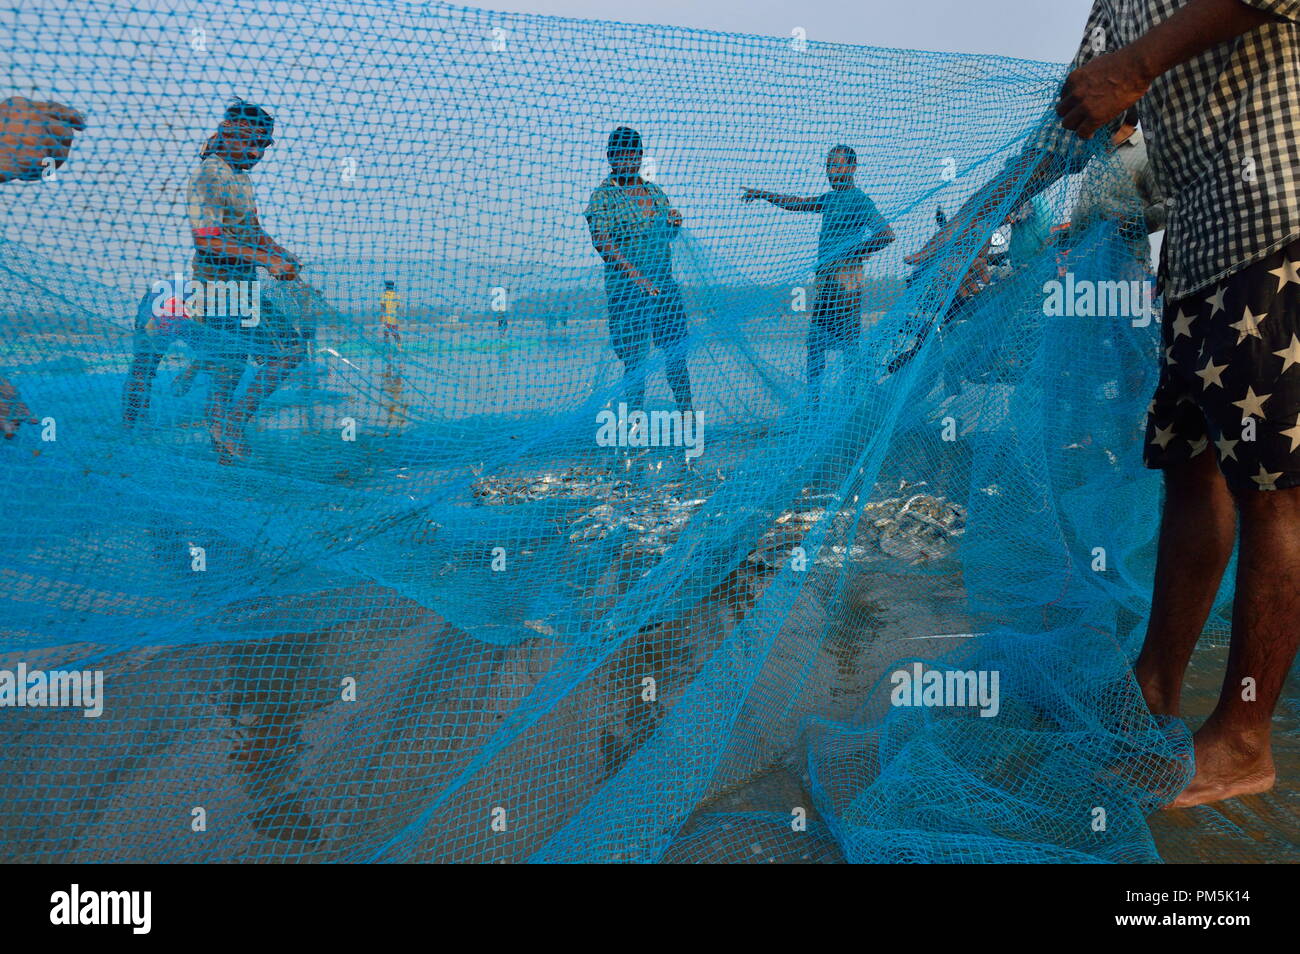 Les pêcheurs en Inde collectent des poissons sur le filet de pêche Banque D'Images